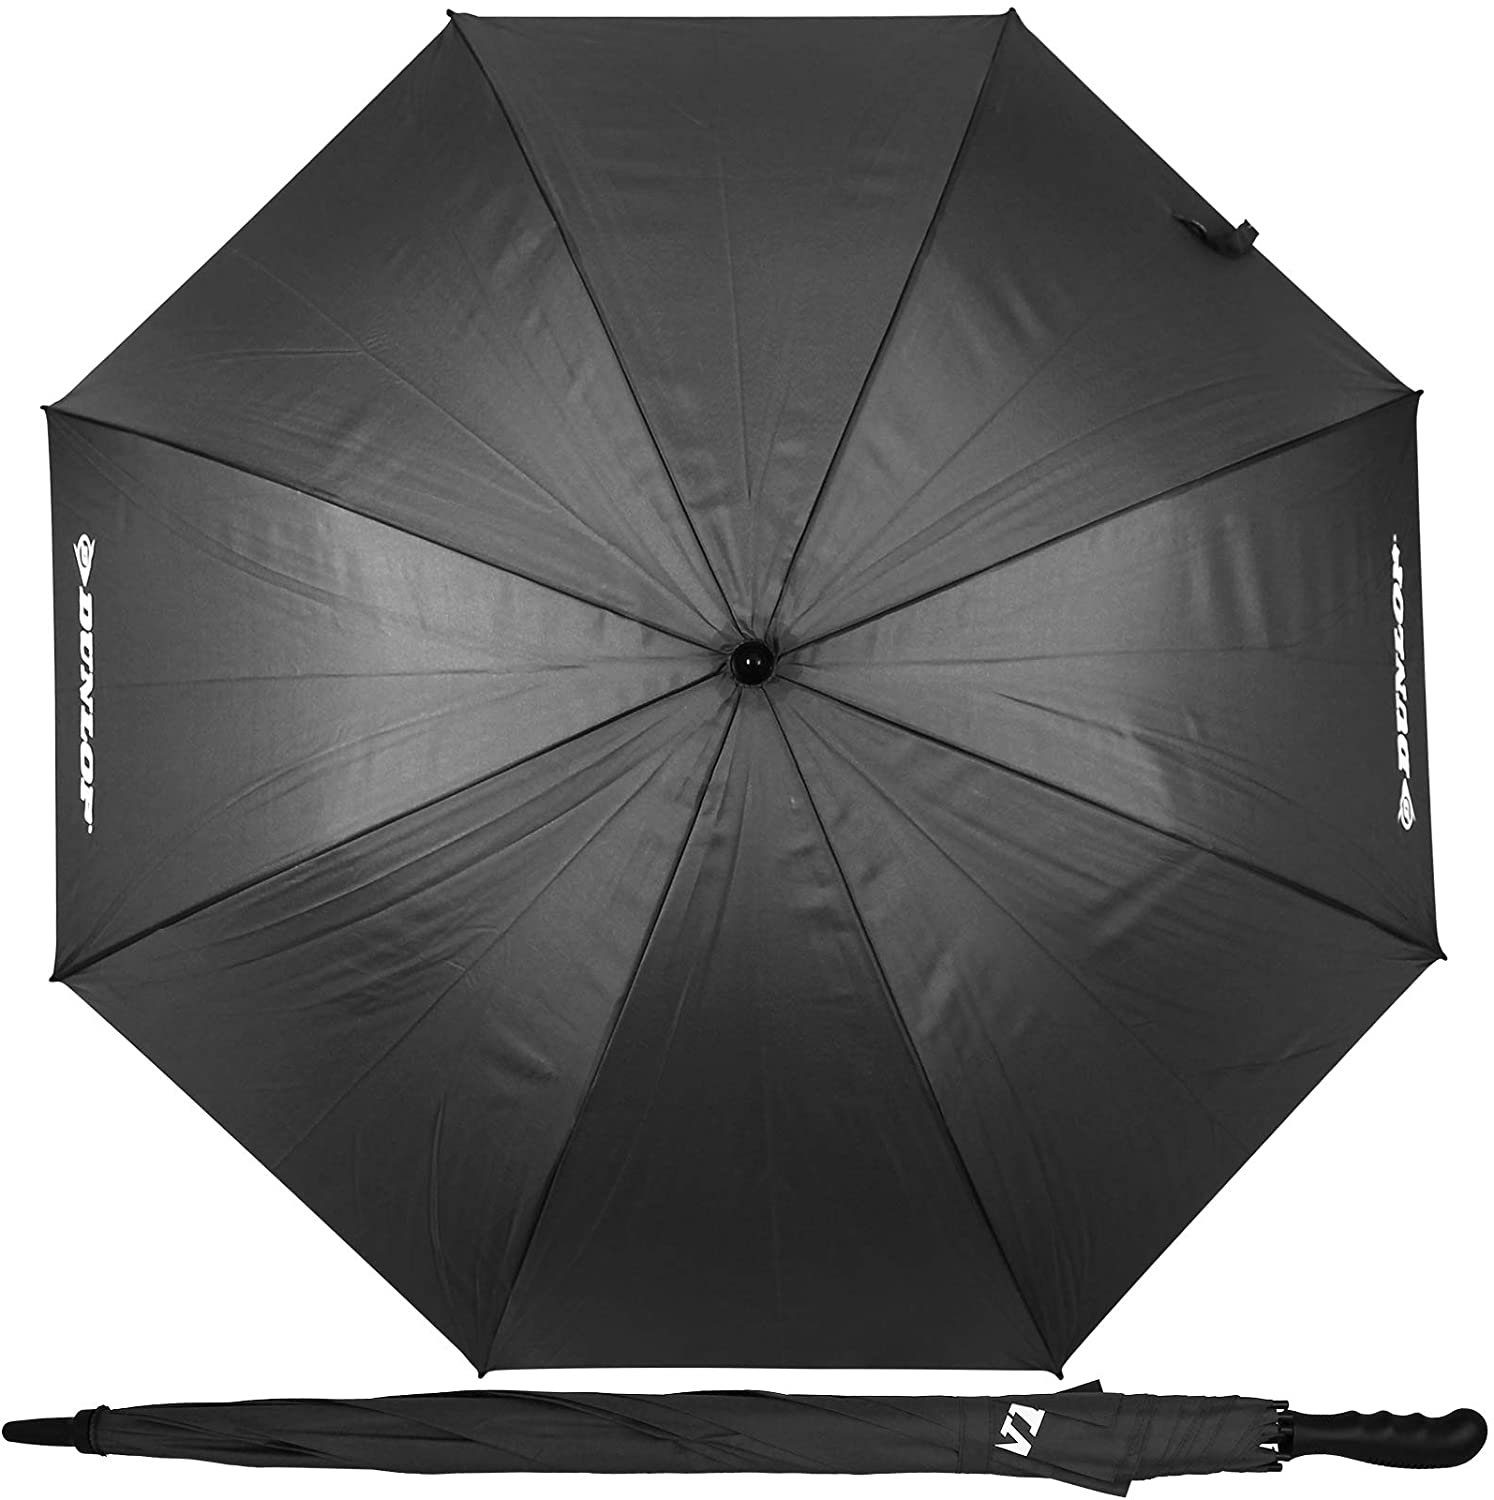 Dokado Partnerschirm XXL Paar Regenschirm 130cm mit Farbwahl Partnerschirm für 2 Personen Stockschirm Familienschirm Doppelregenschirm Dunlop blau